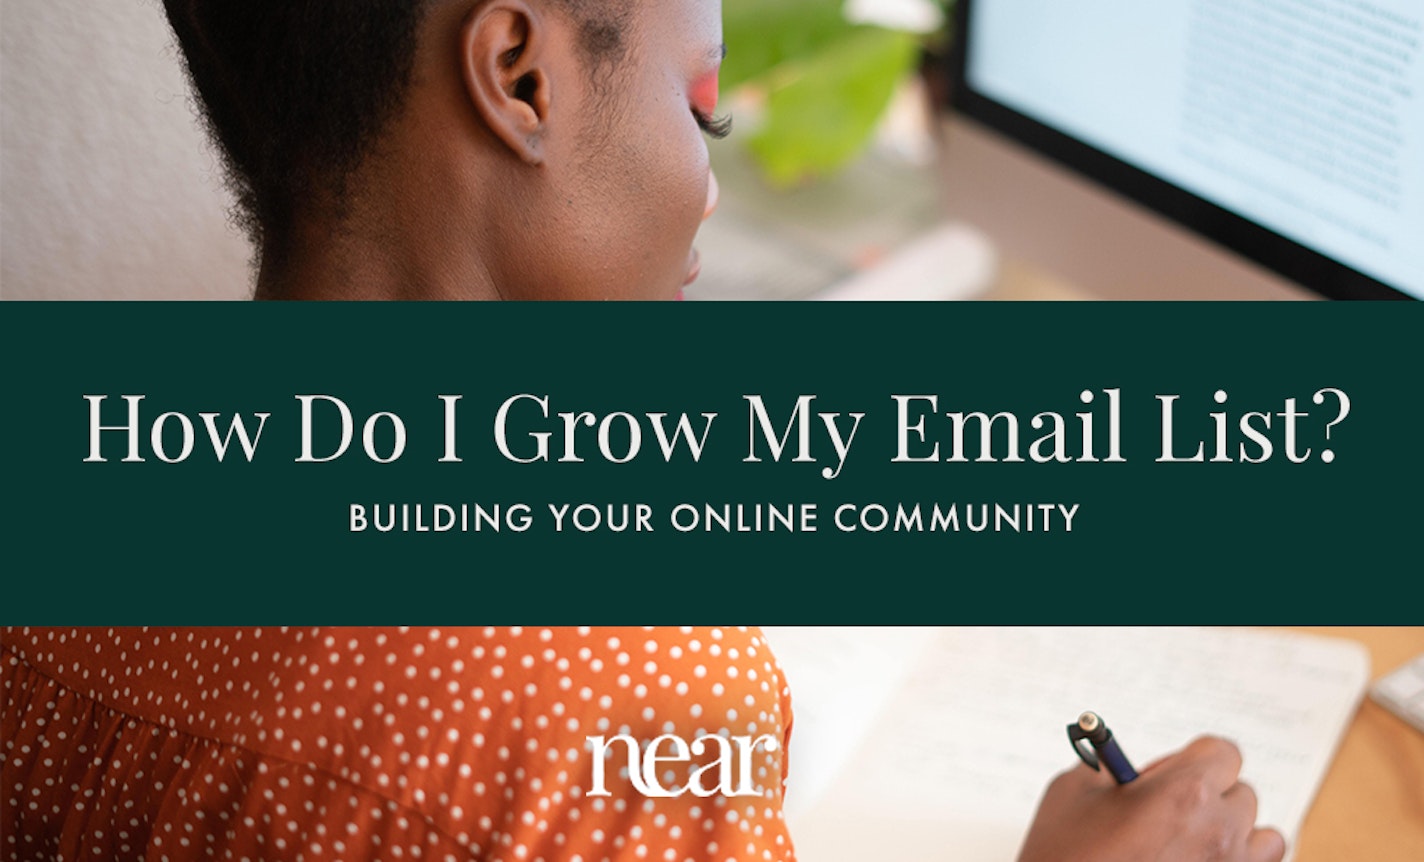 How Do I Grow My Email List?